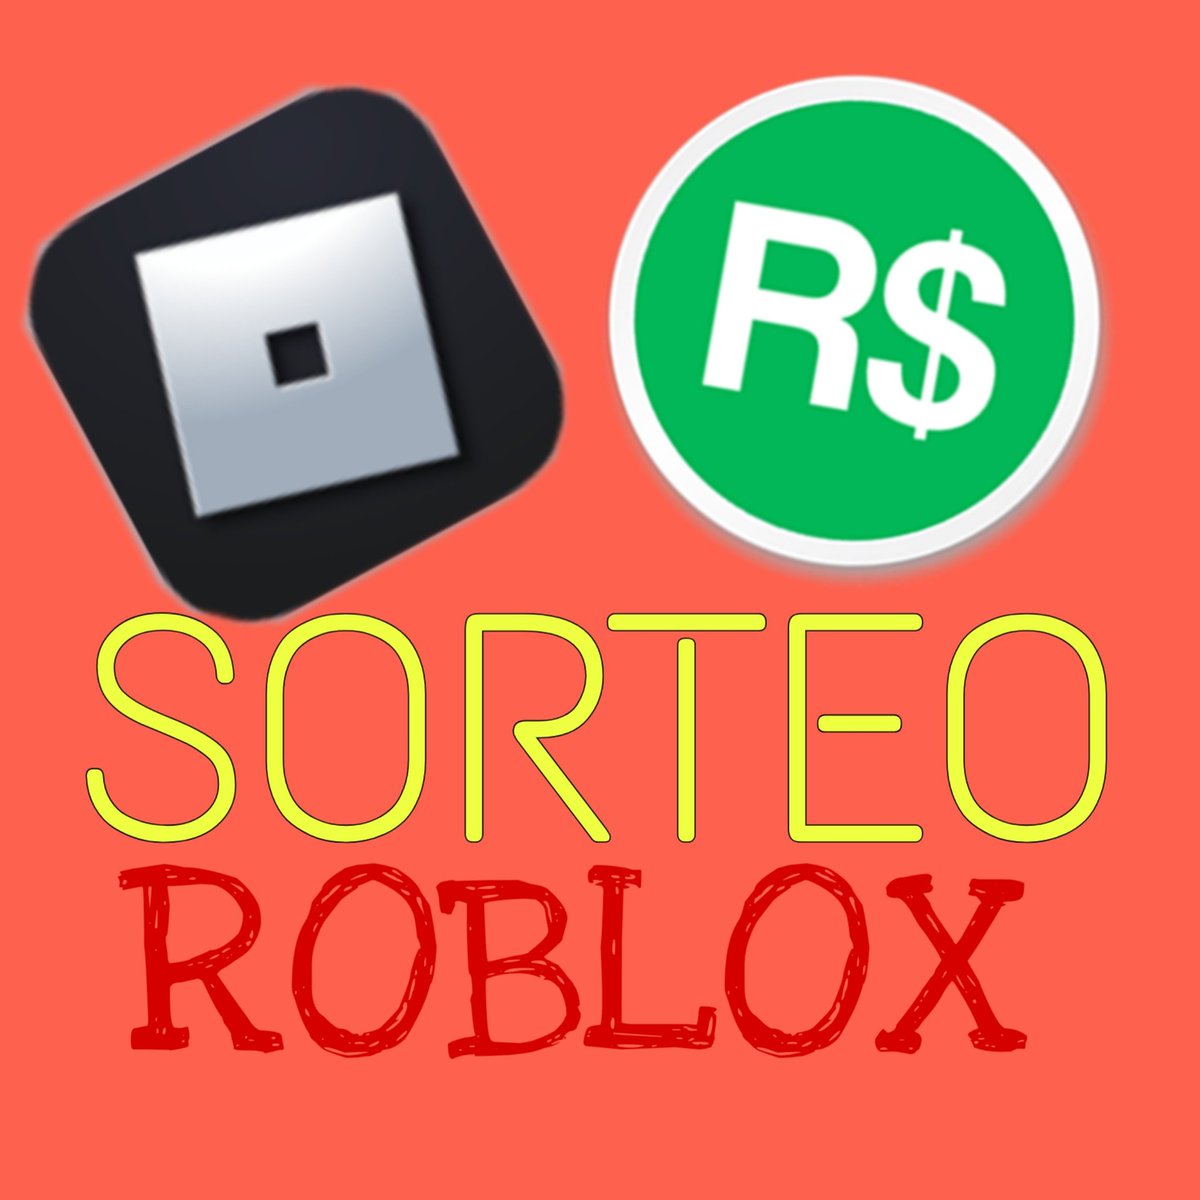 Sorteo Roblox Sorteoroblox Twitter - sorteos de robux de roblox home facebook